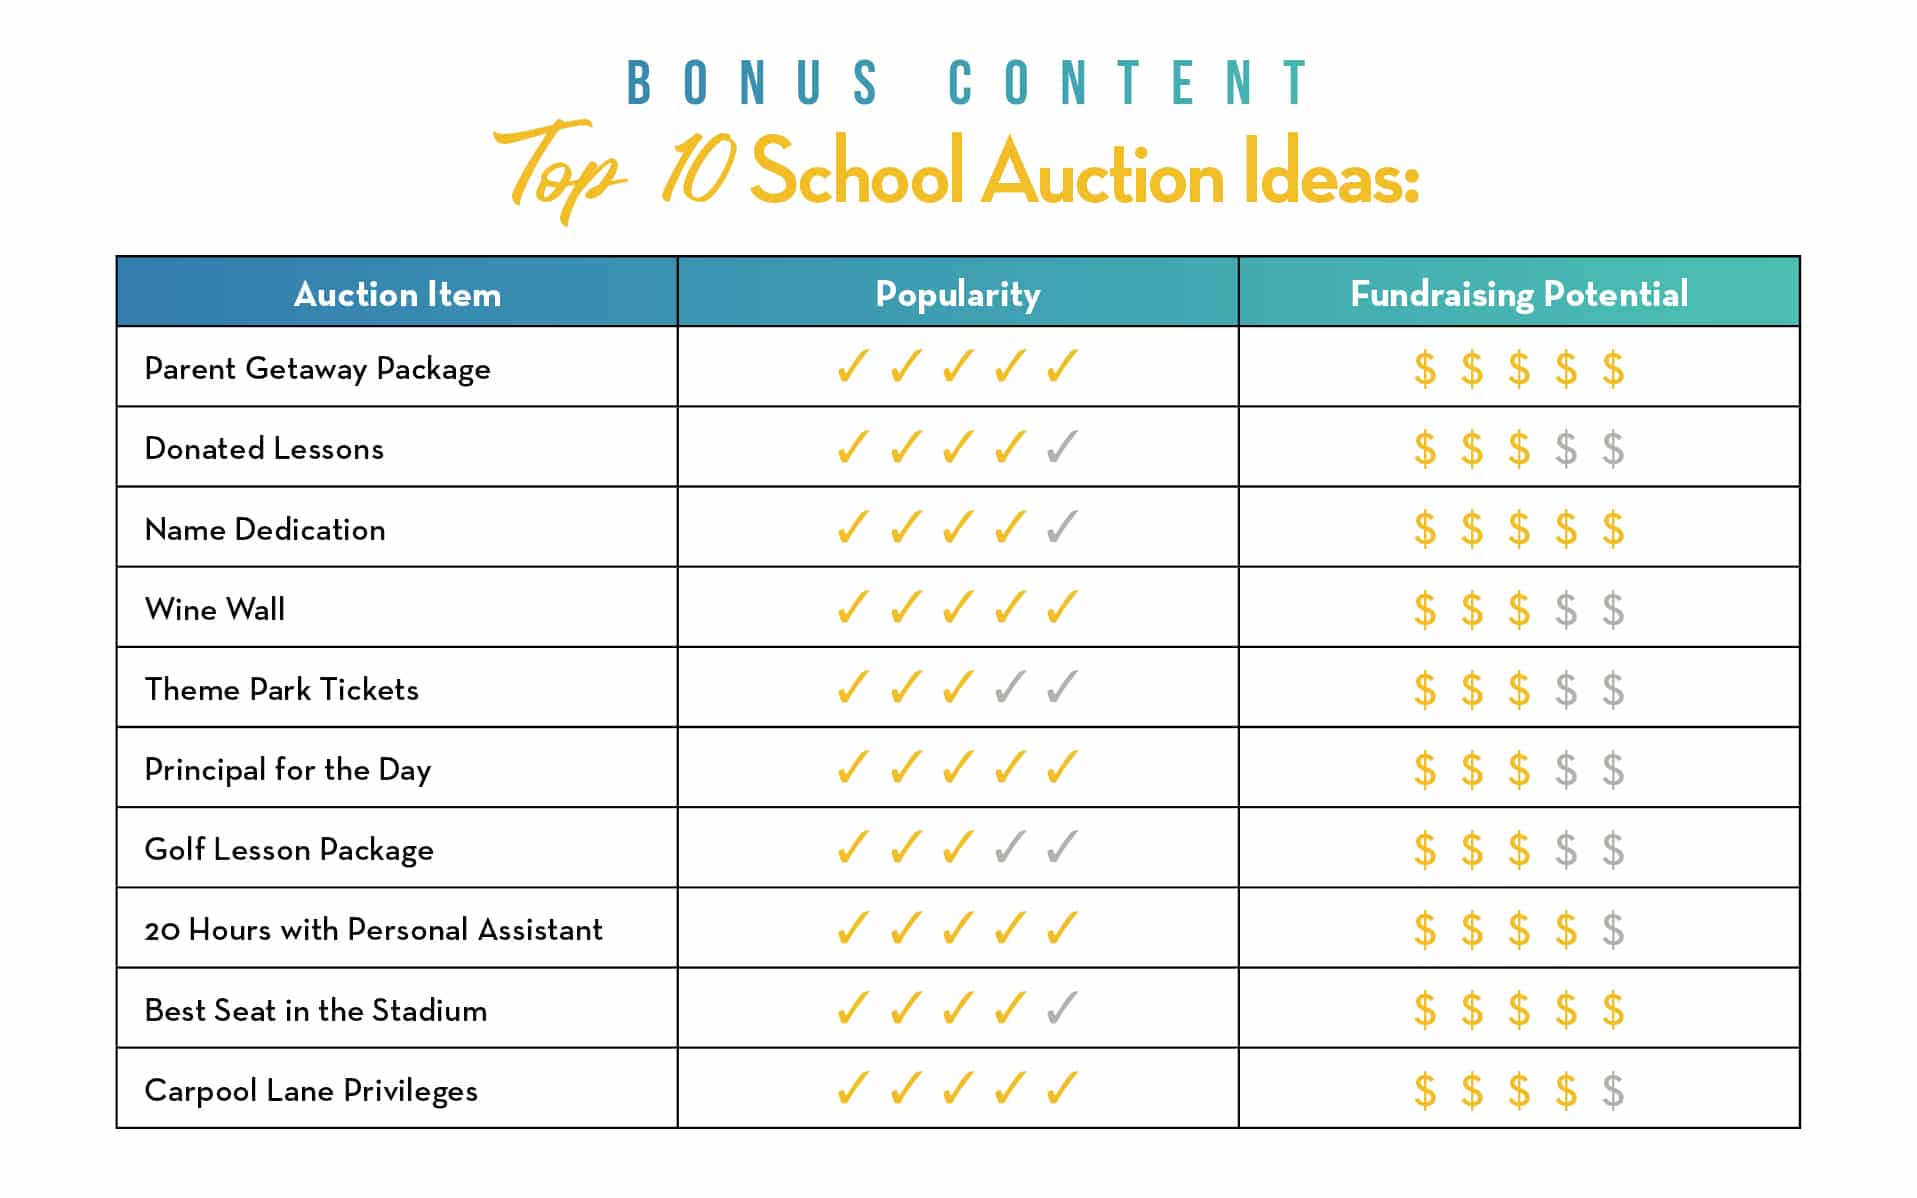 BONUS CONTENT: Top 10 School Auction Ideas